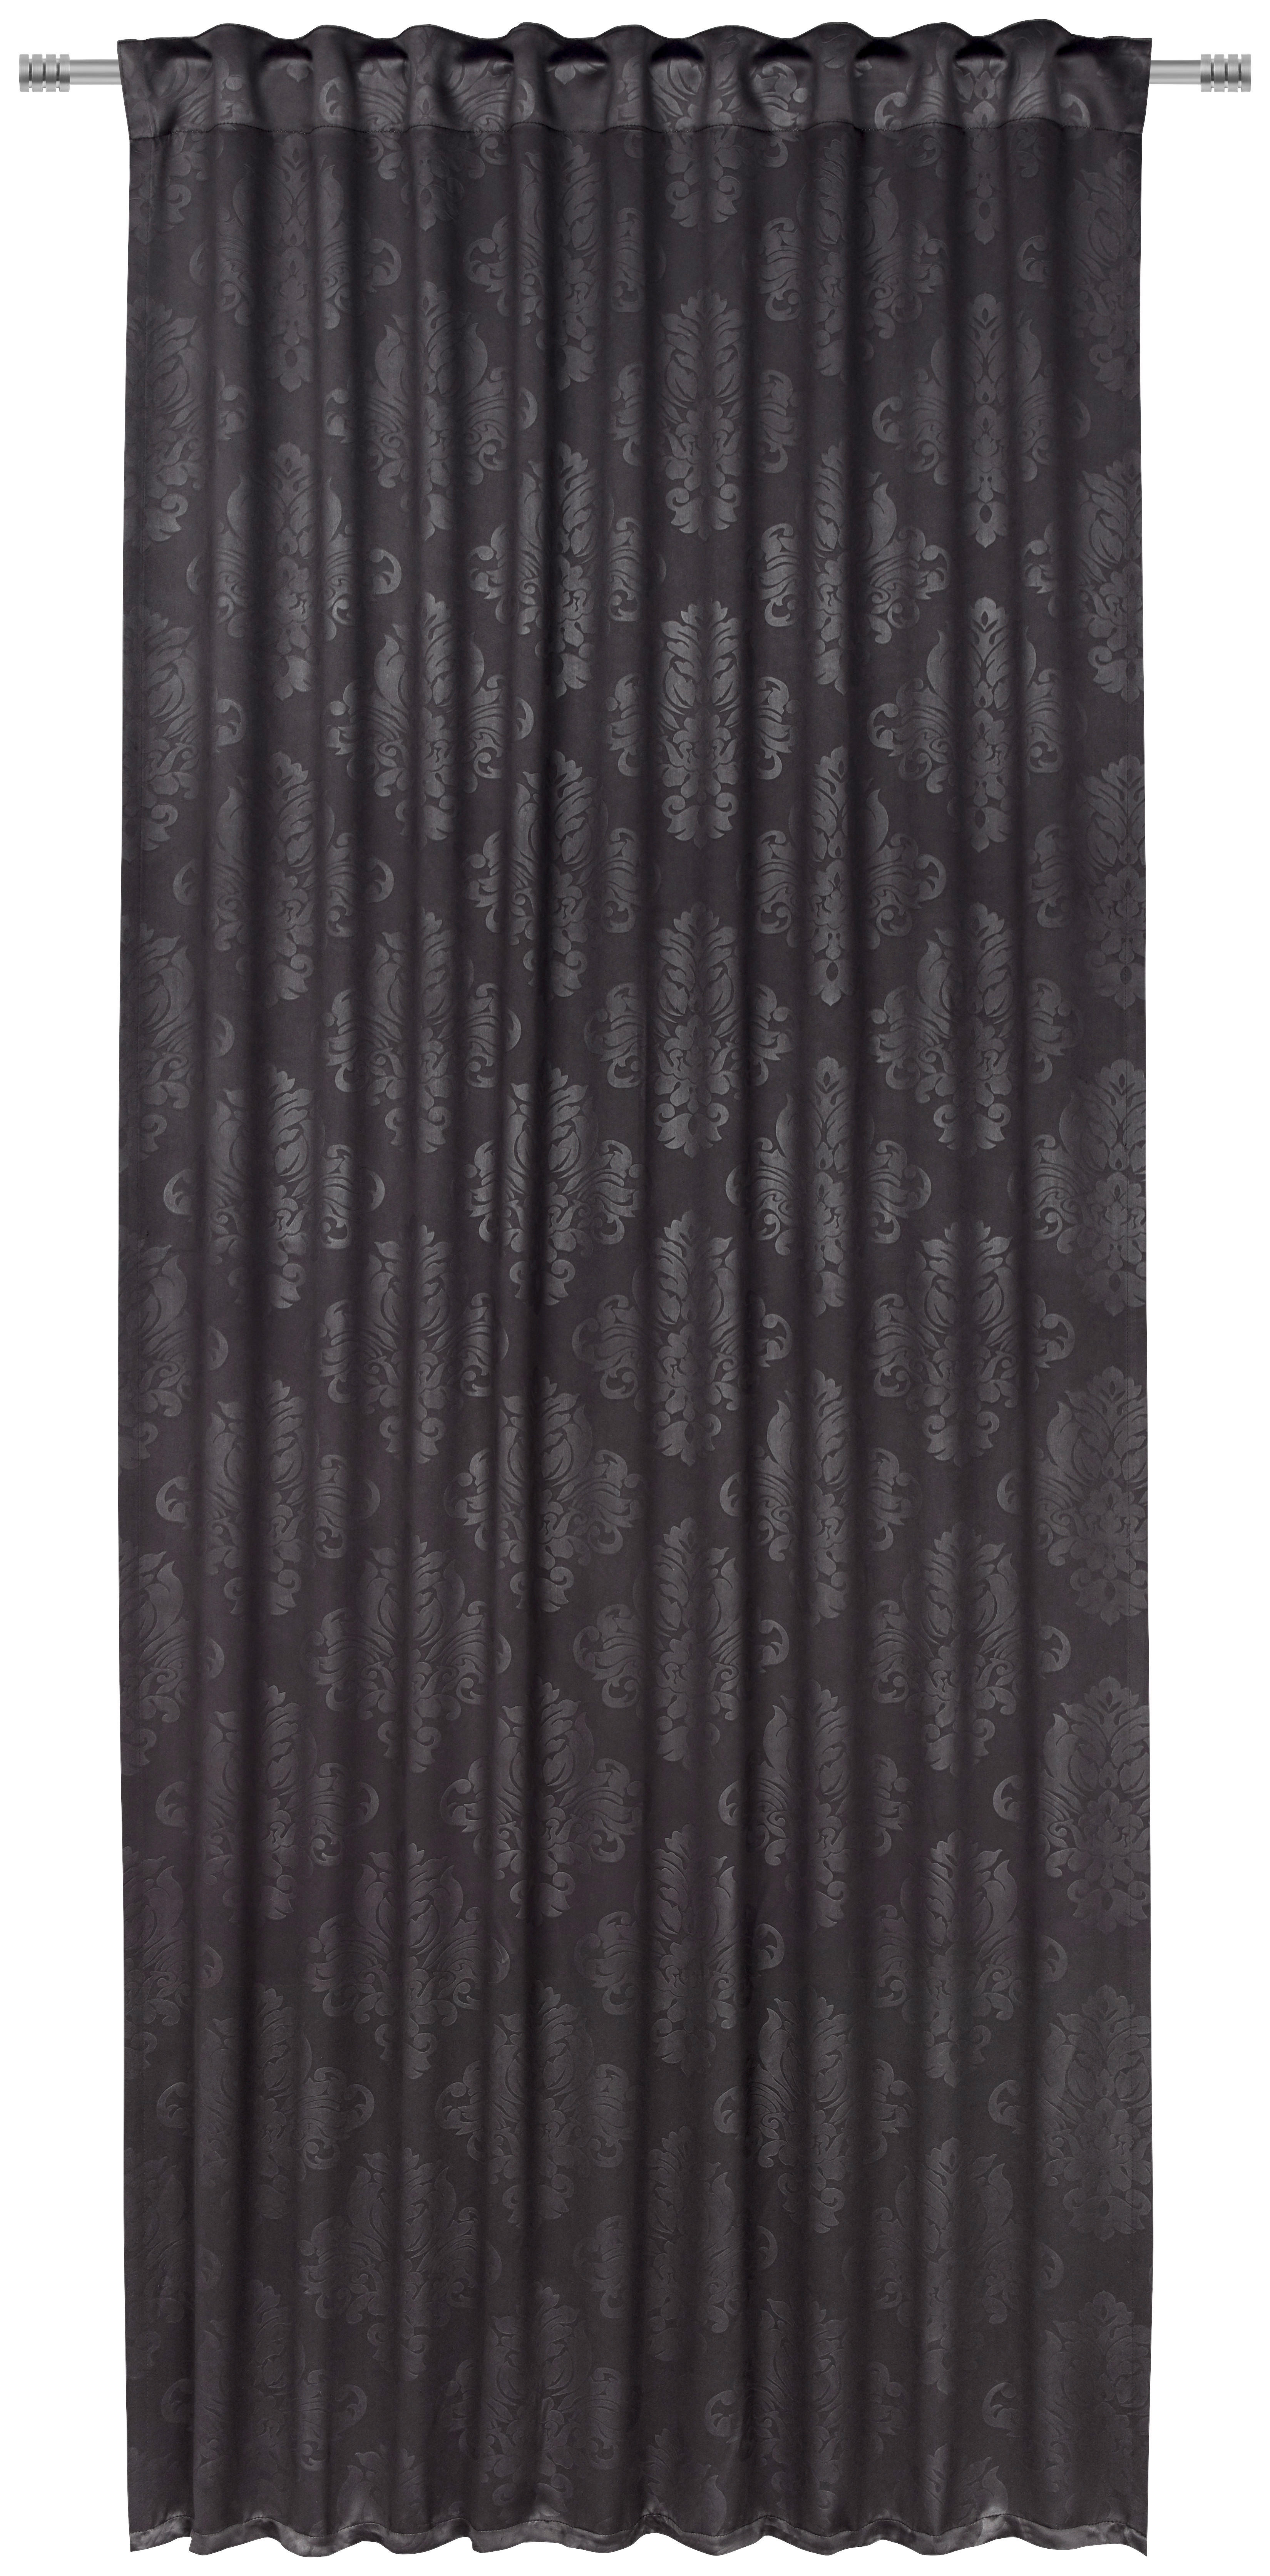 KÉSZFÜGGÖNY Blackout (fényzáró)  - Fekete, Konventionell, Textil (135/245cm) - Boxxx